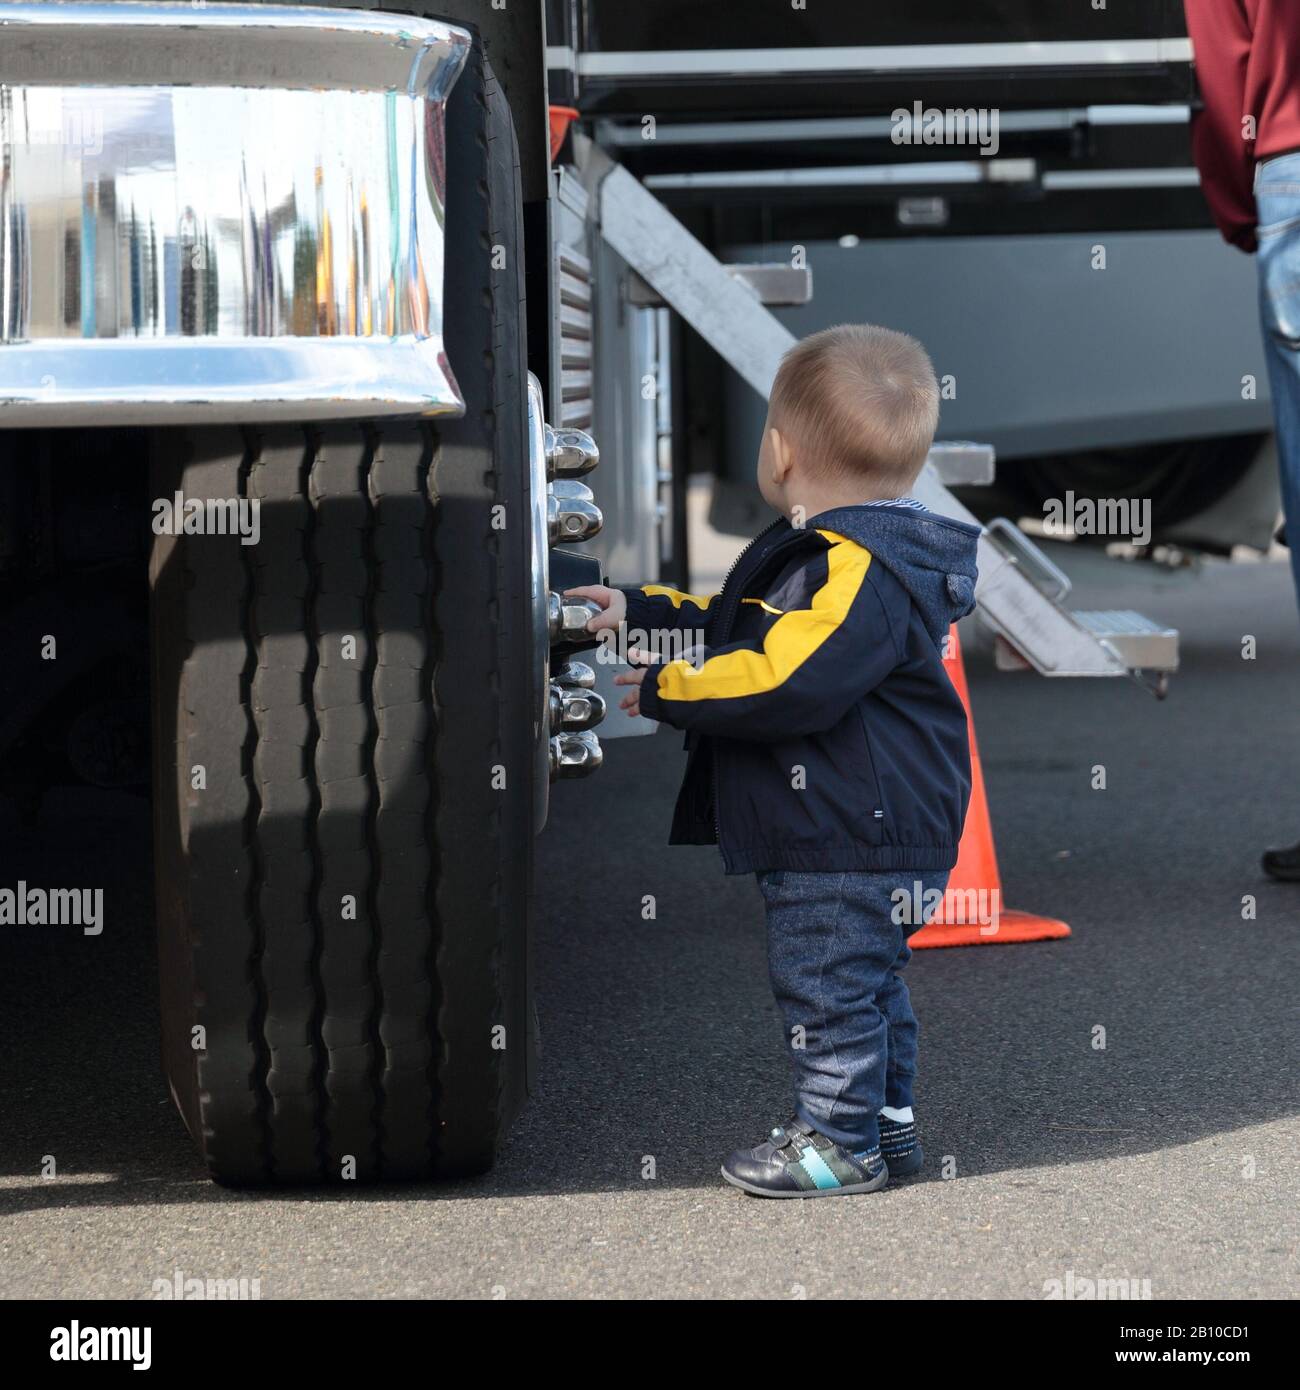 Kleiner Kleinkind in einer blauen Jacke, Hose und Stiefel neben einem großen Vorderrad eines Staplers, das Chrom-Tassenknüsse am Rad berührt. Stockfoto